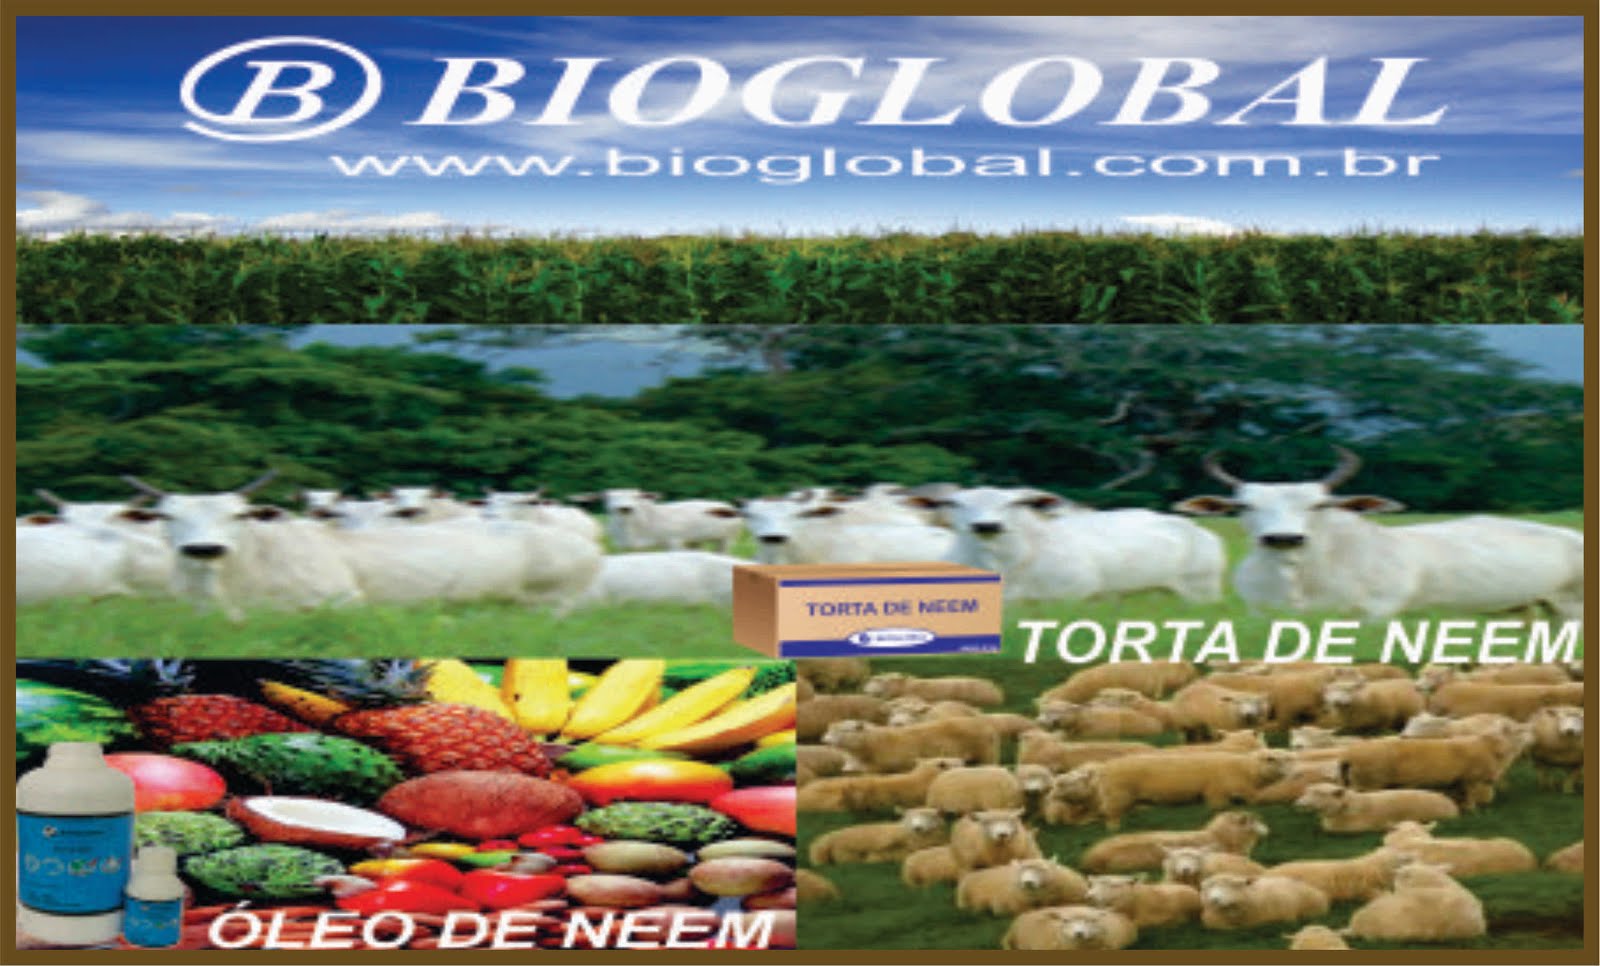 Bioglobal